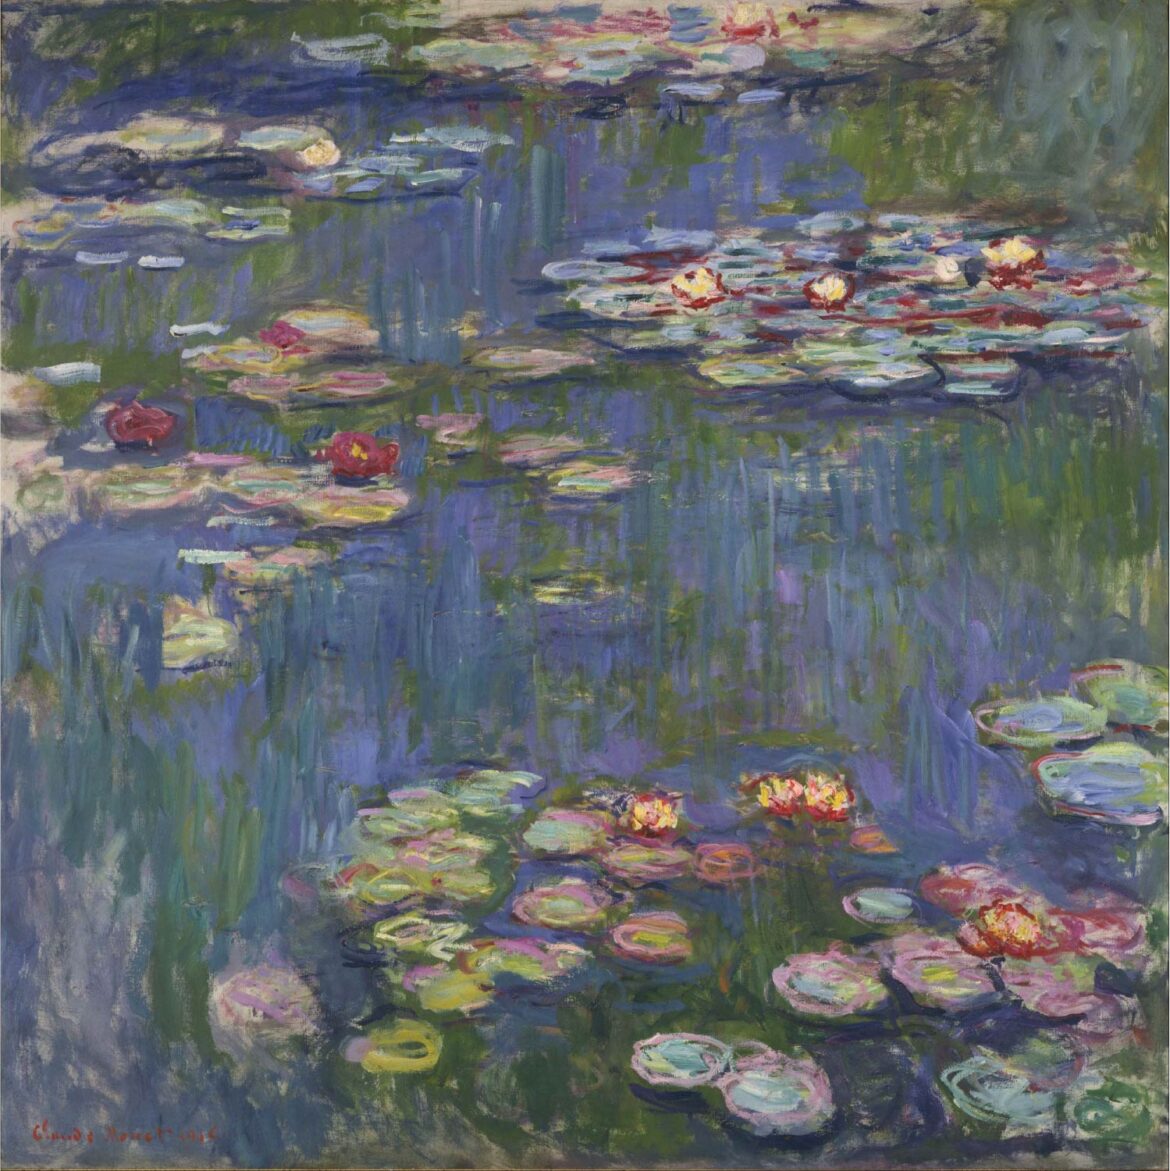 【無料壁紙】クロード・モネ「睡蓮 (1916)」 / Claude Monet_Water Lilies (1916)